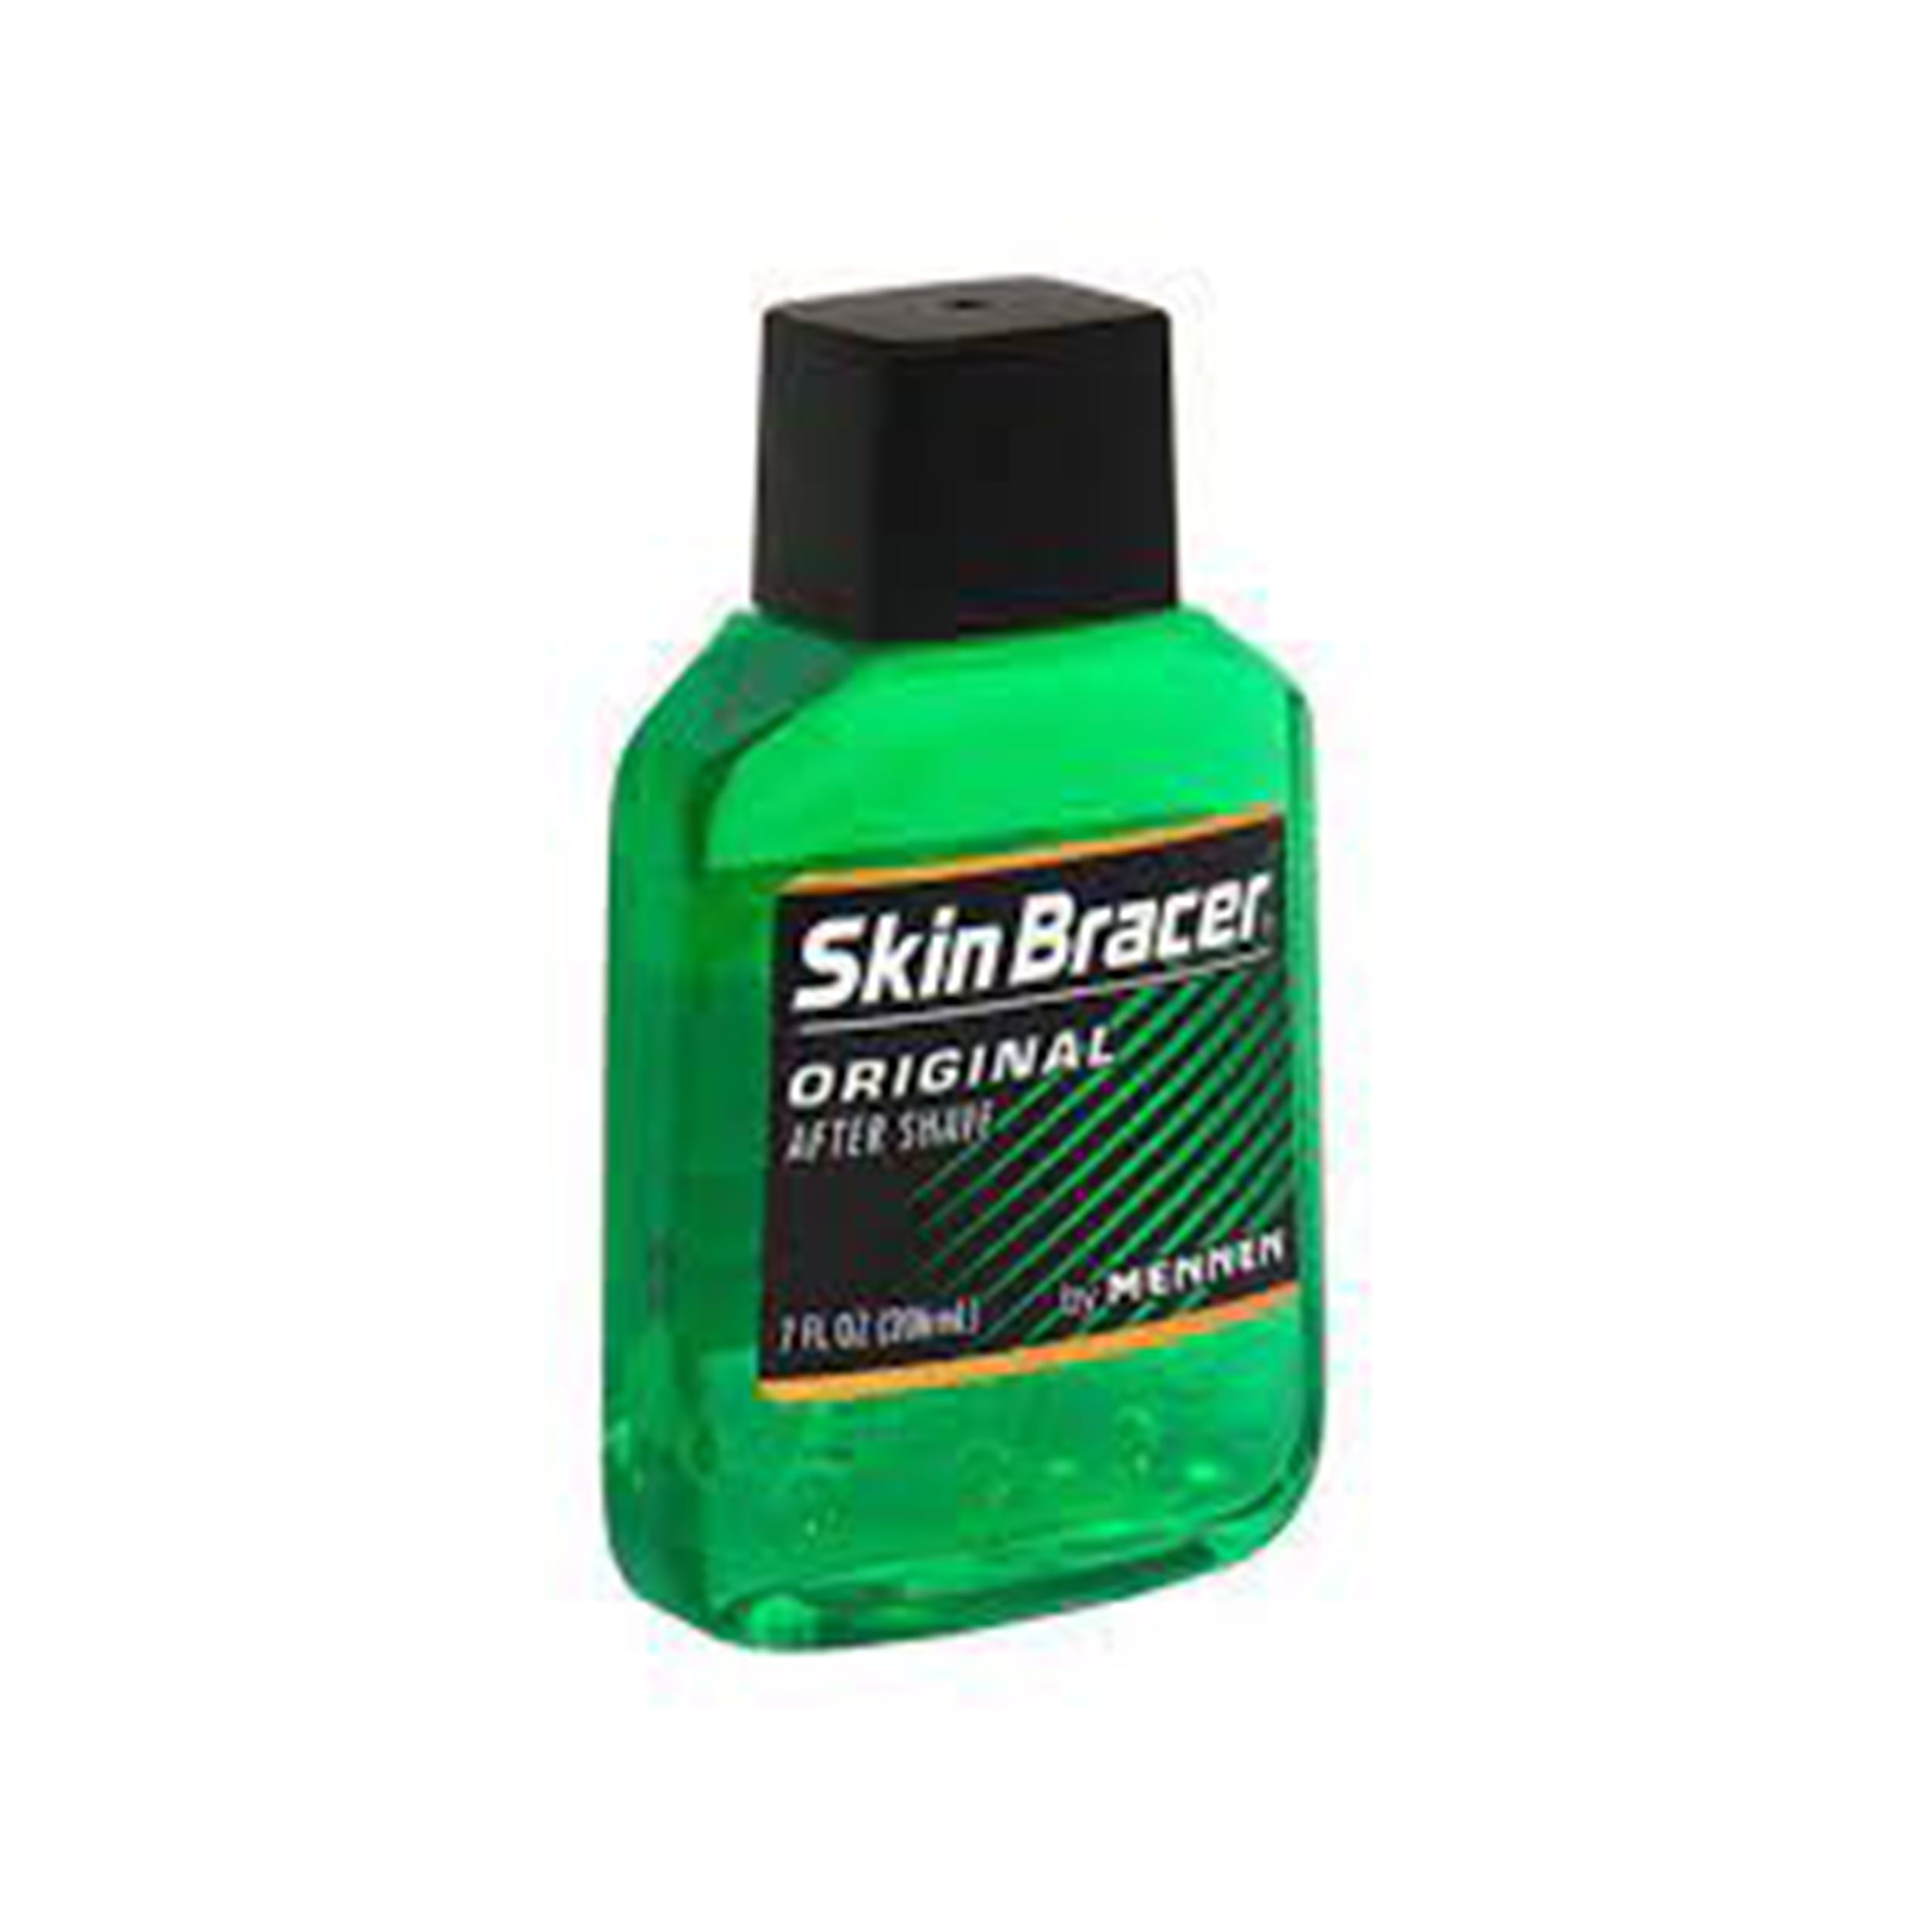 Skin Bracer After Shave Lotion and Skin Conditioner, Original - 5